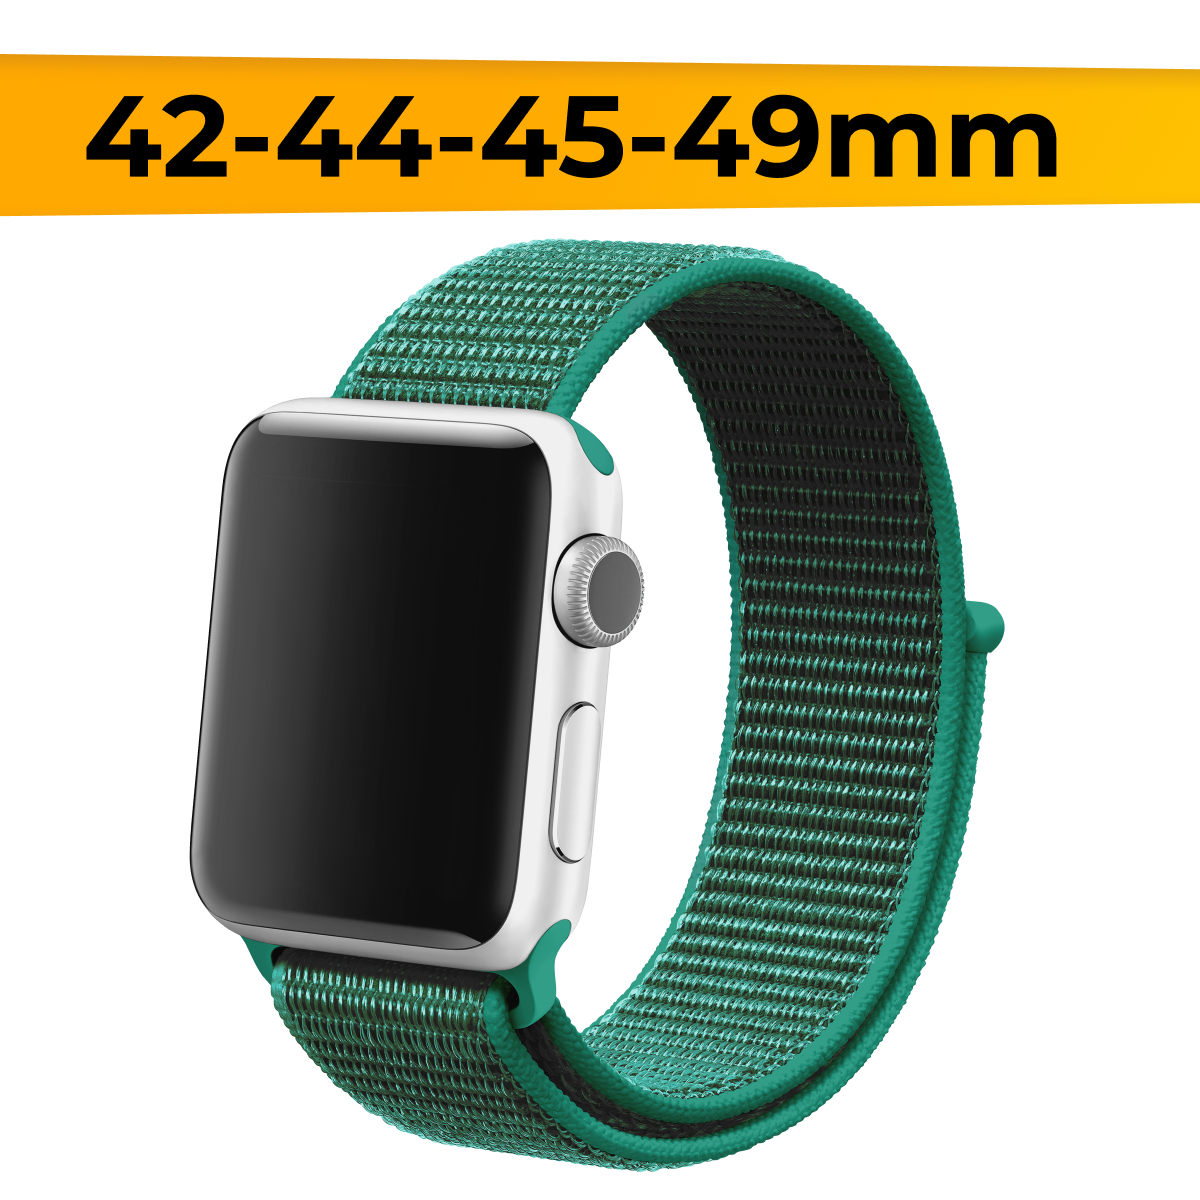 Нейлоновый ремешок для смарт часов Apple Watch 42-44-45-49mm / Эластичный браслет для Эпл Вотч 1-9 и SE / Сменный тканевый ремешок / Темно-бирюзовый